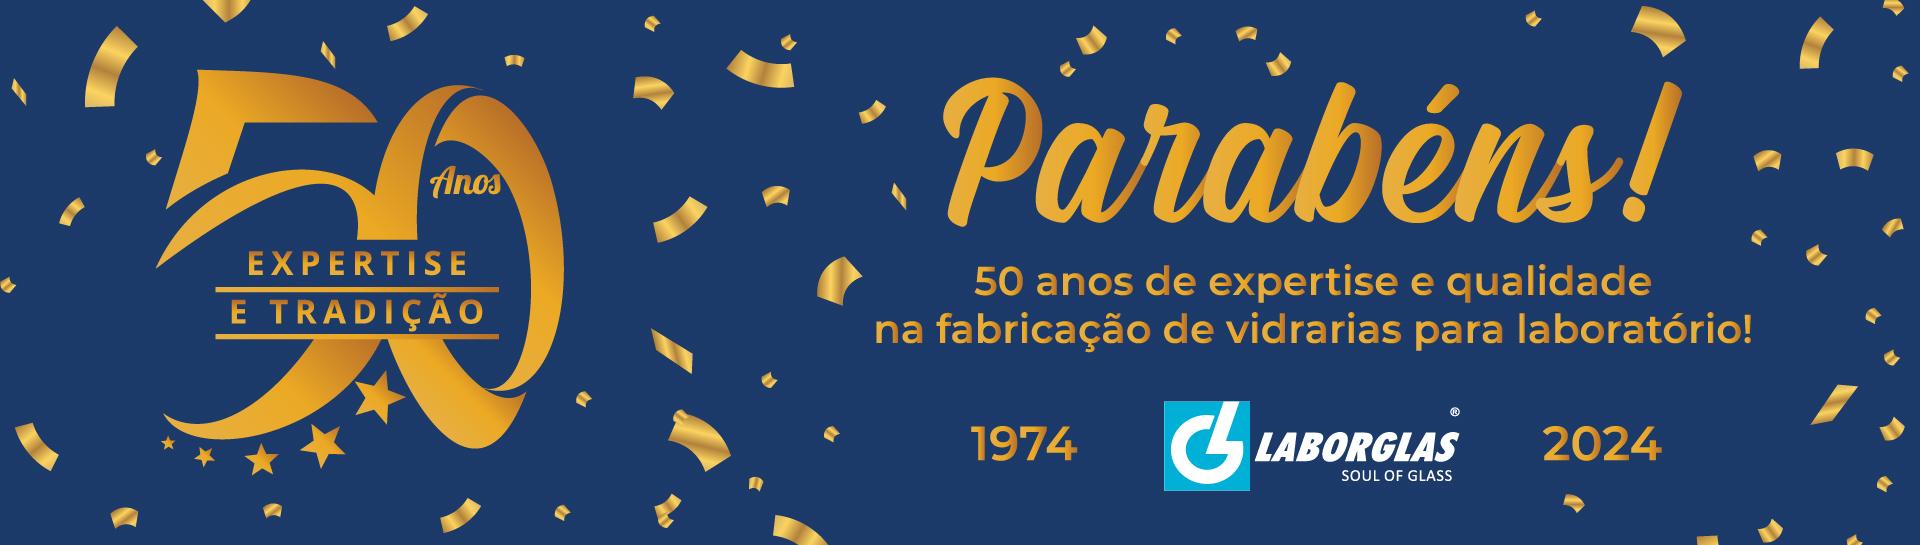 50 anos -  Laborglas é uma empresa brasileira com atuação no mercado de vidrariarias, acessórios e equipamentos para laboratórios.